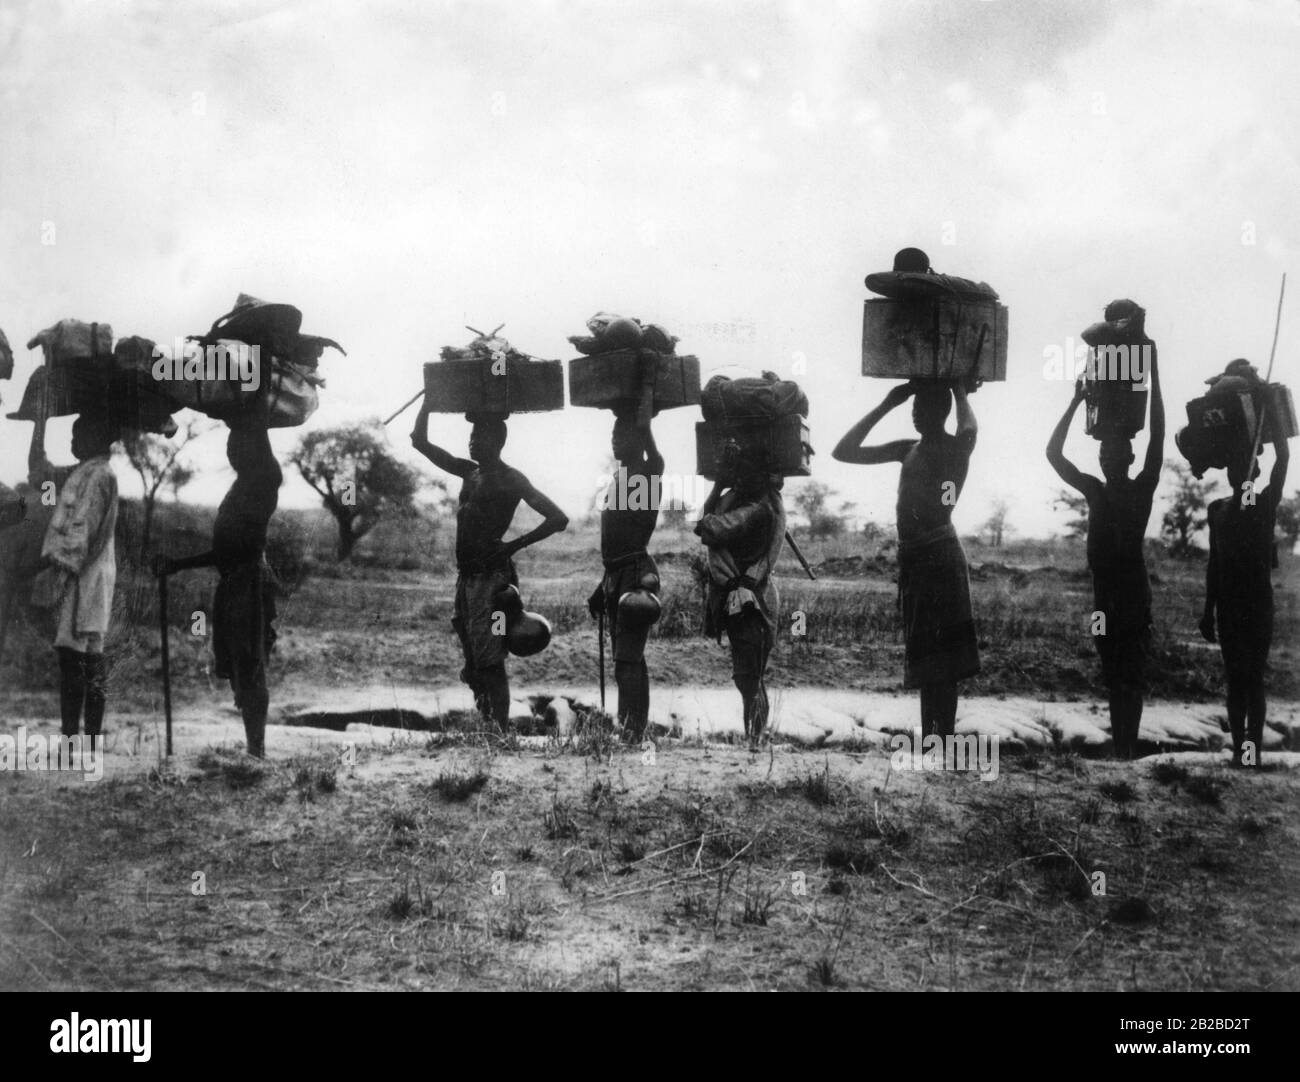 Une colonne porteuse d'hommes autochtones en Afrique de l'est allemande, en Ouganda d'aujourd'hui, sur le chemin du bout de la route au lac Victoria. Probablement un moviestill, non daté. Banque D'Images